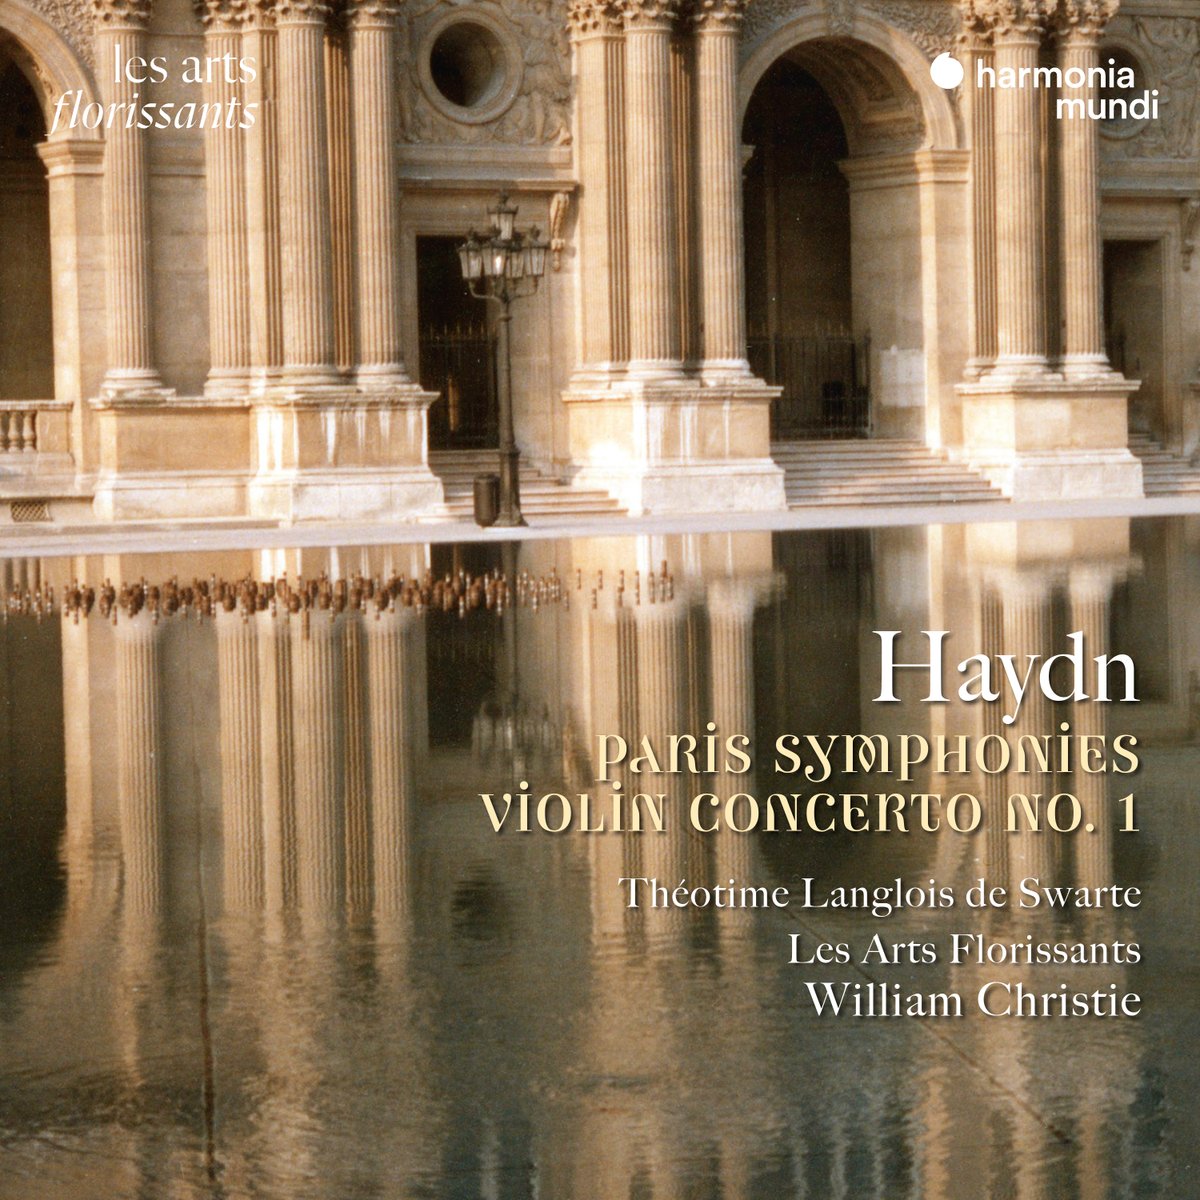 NEW] Paris Symphonies, Violin concerto n°1| HAYDN @theotimeviolin @lesartsflo 👉Ecouter/listen: lnk.to/ParisSymphonie… 🎼William Christie et Les Arts Florissants nous proposent une lecture grisante d’élégance et de poésie de quatre des symphonies parisiennes de Haydn !